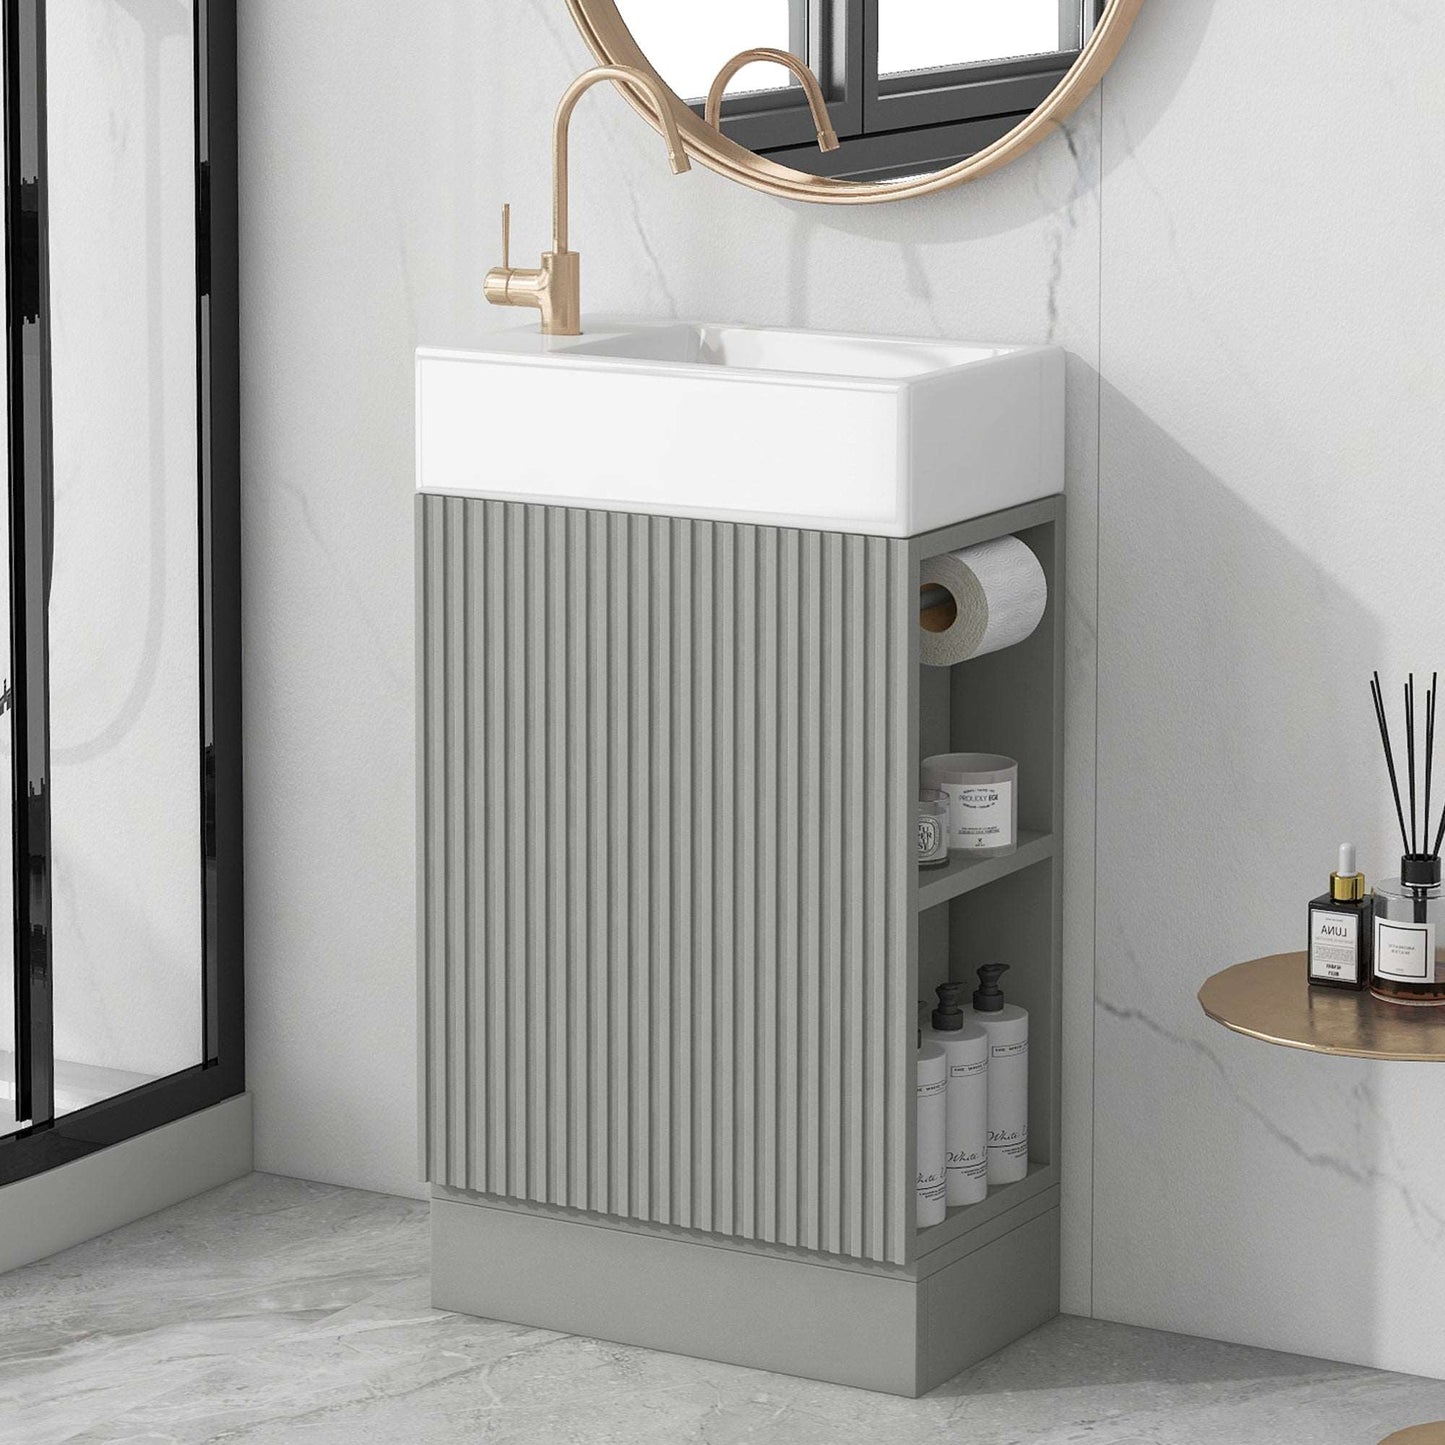 Bathroom Vanity Cabinet with Sink Two-tier Shelf COLOR:grey